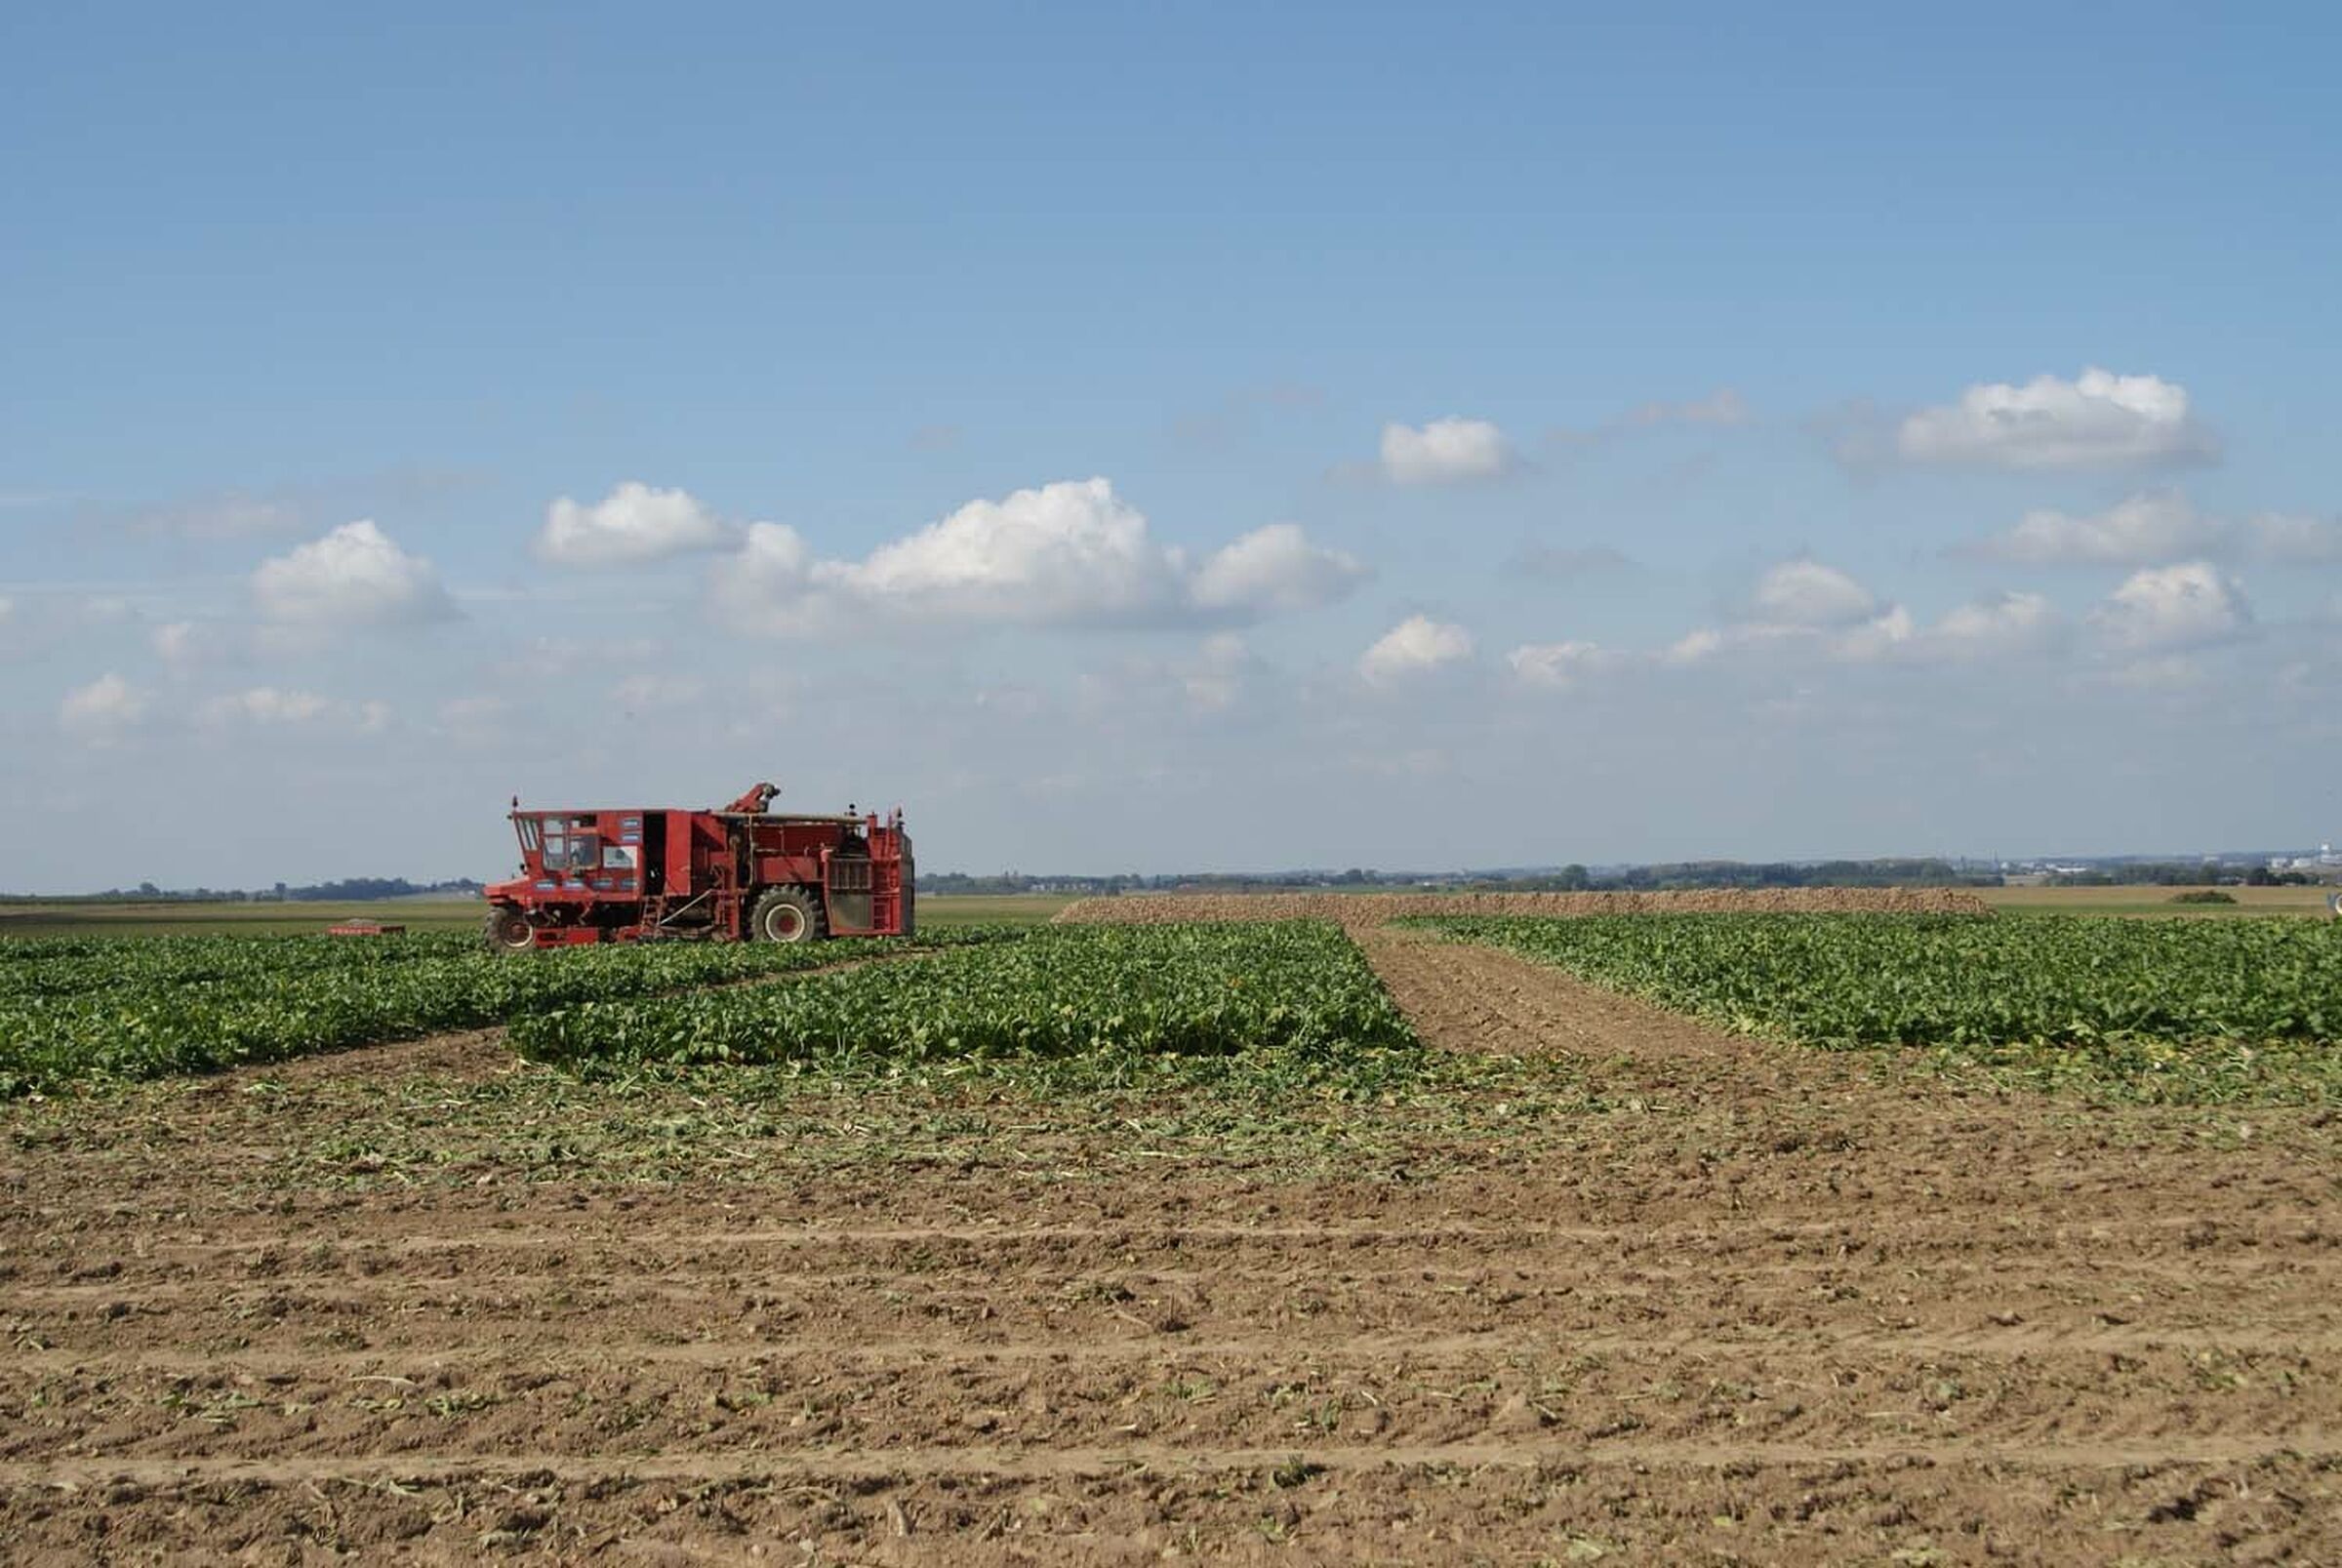 SESVanderHave sugar beet seed - sugar beet varieties, harvesting machine on field, field trials, analysis